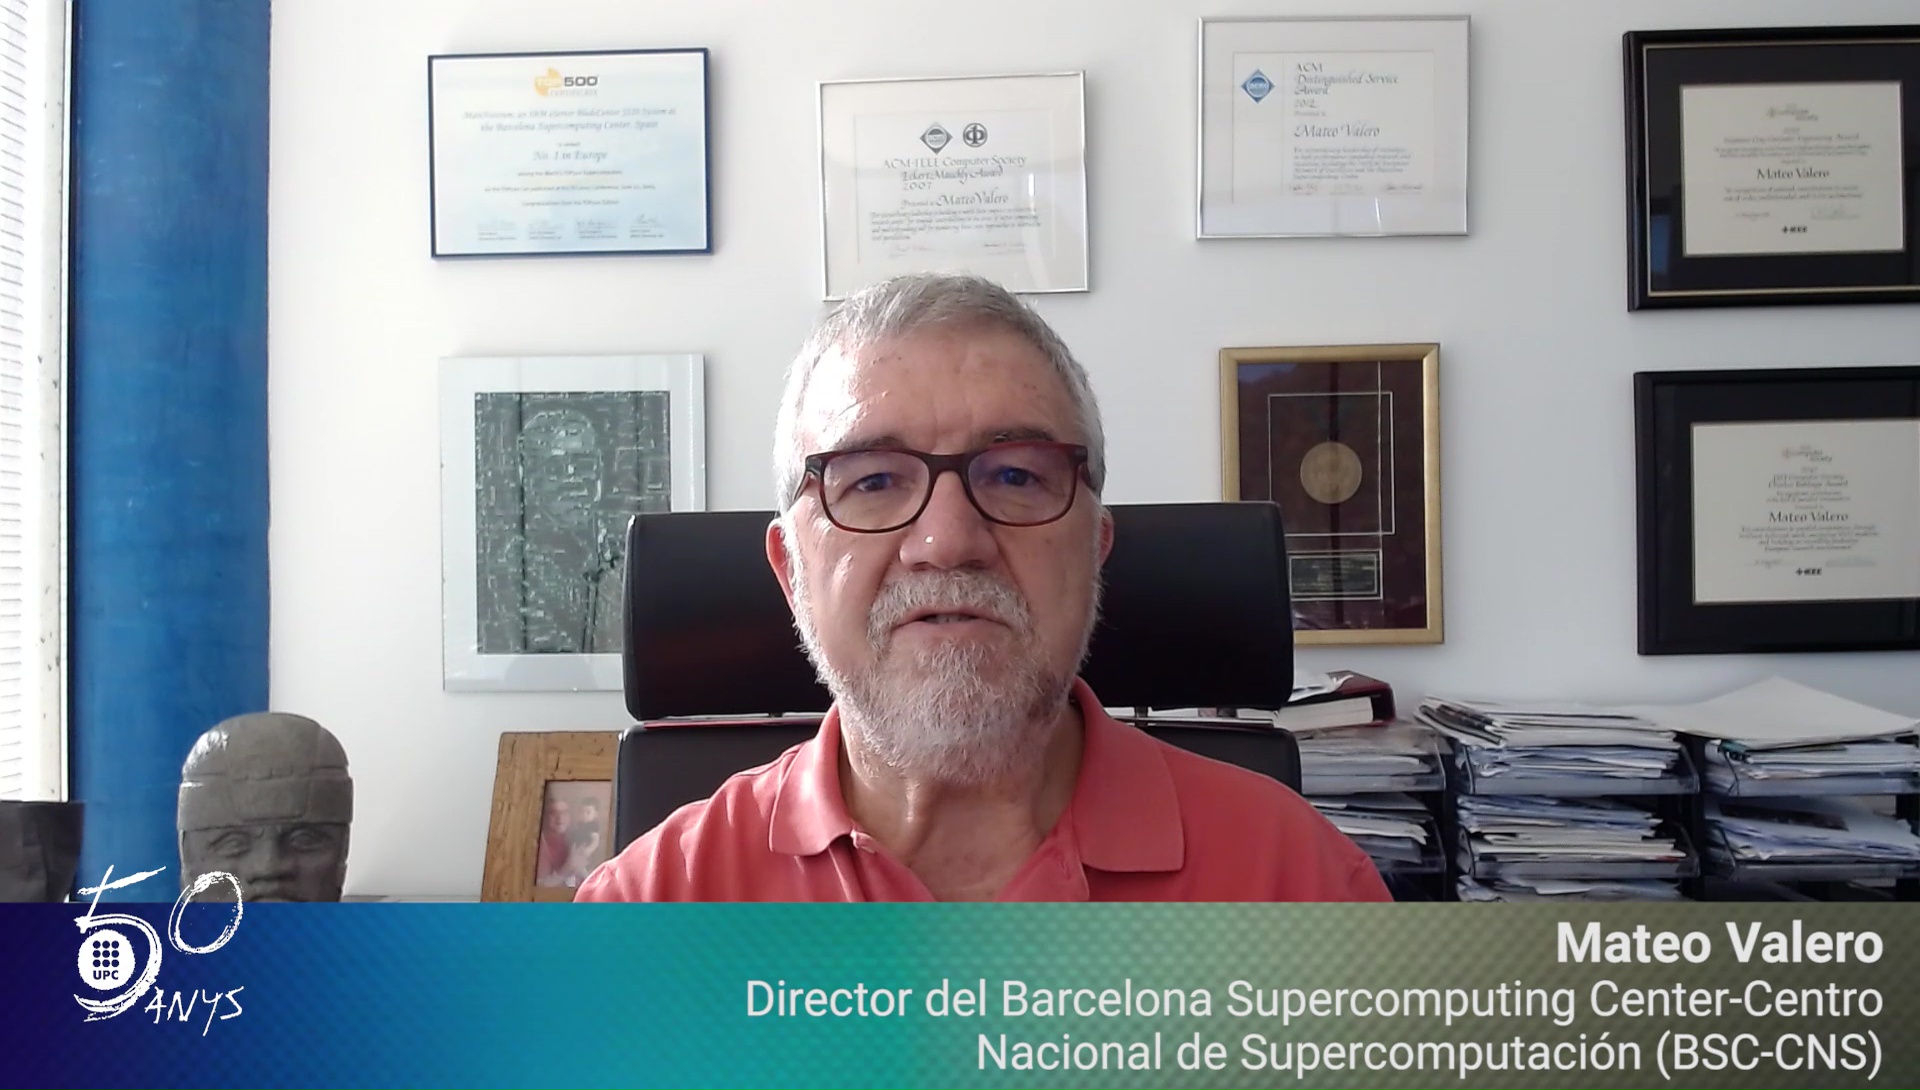 Mateo Valero, director del BSC-CNS, felicita els #50anysUPC